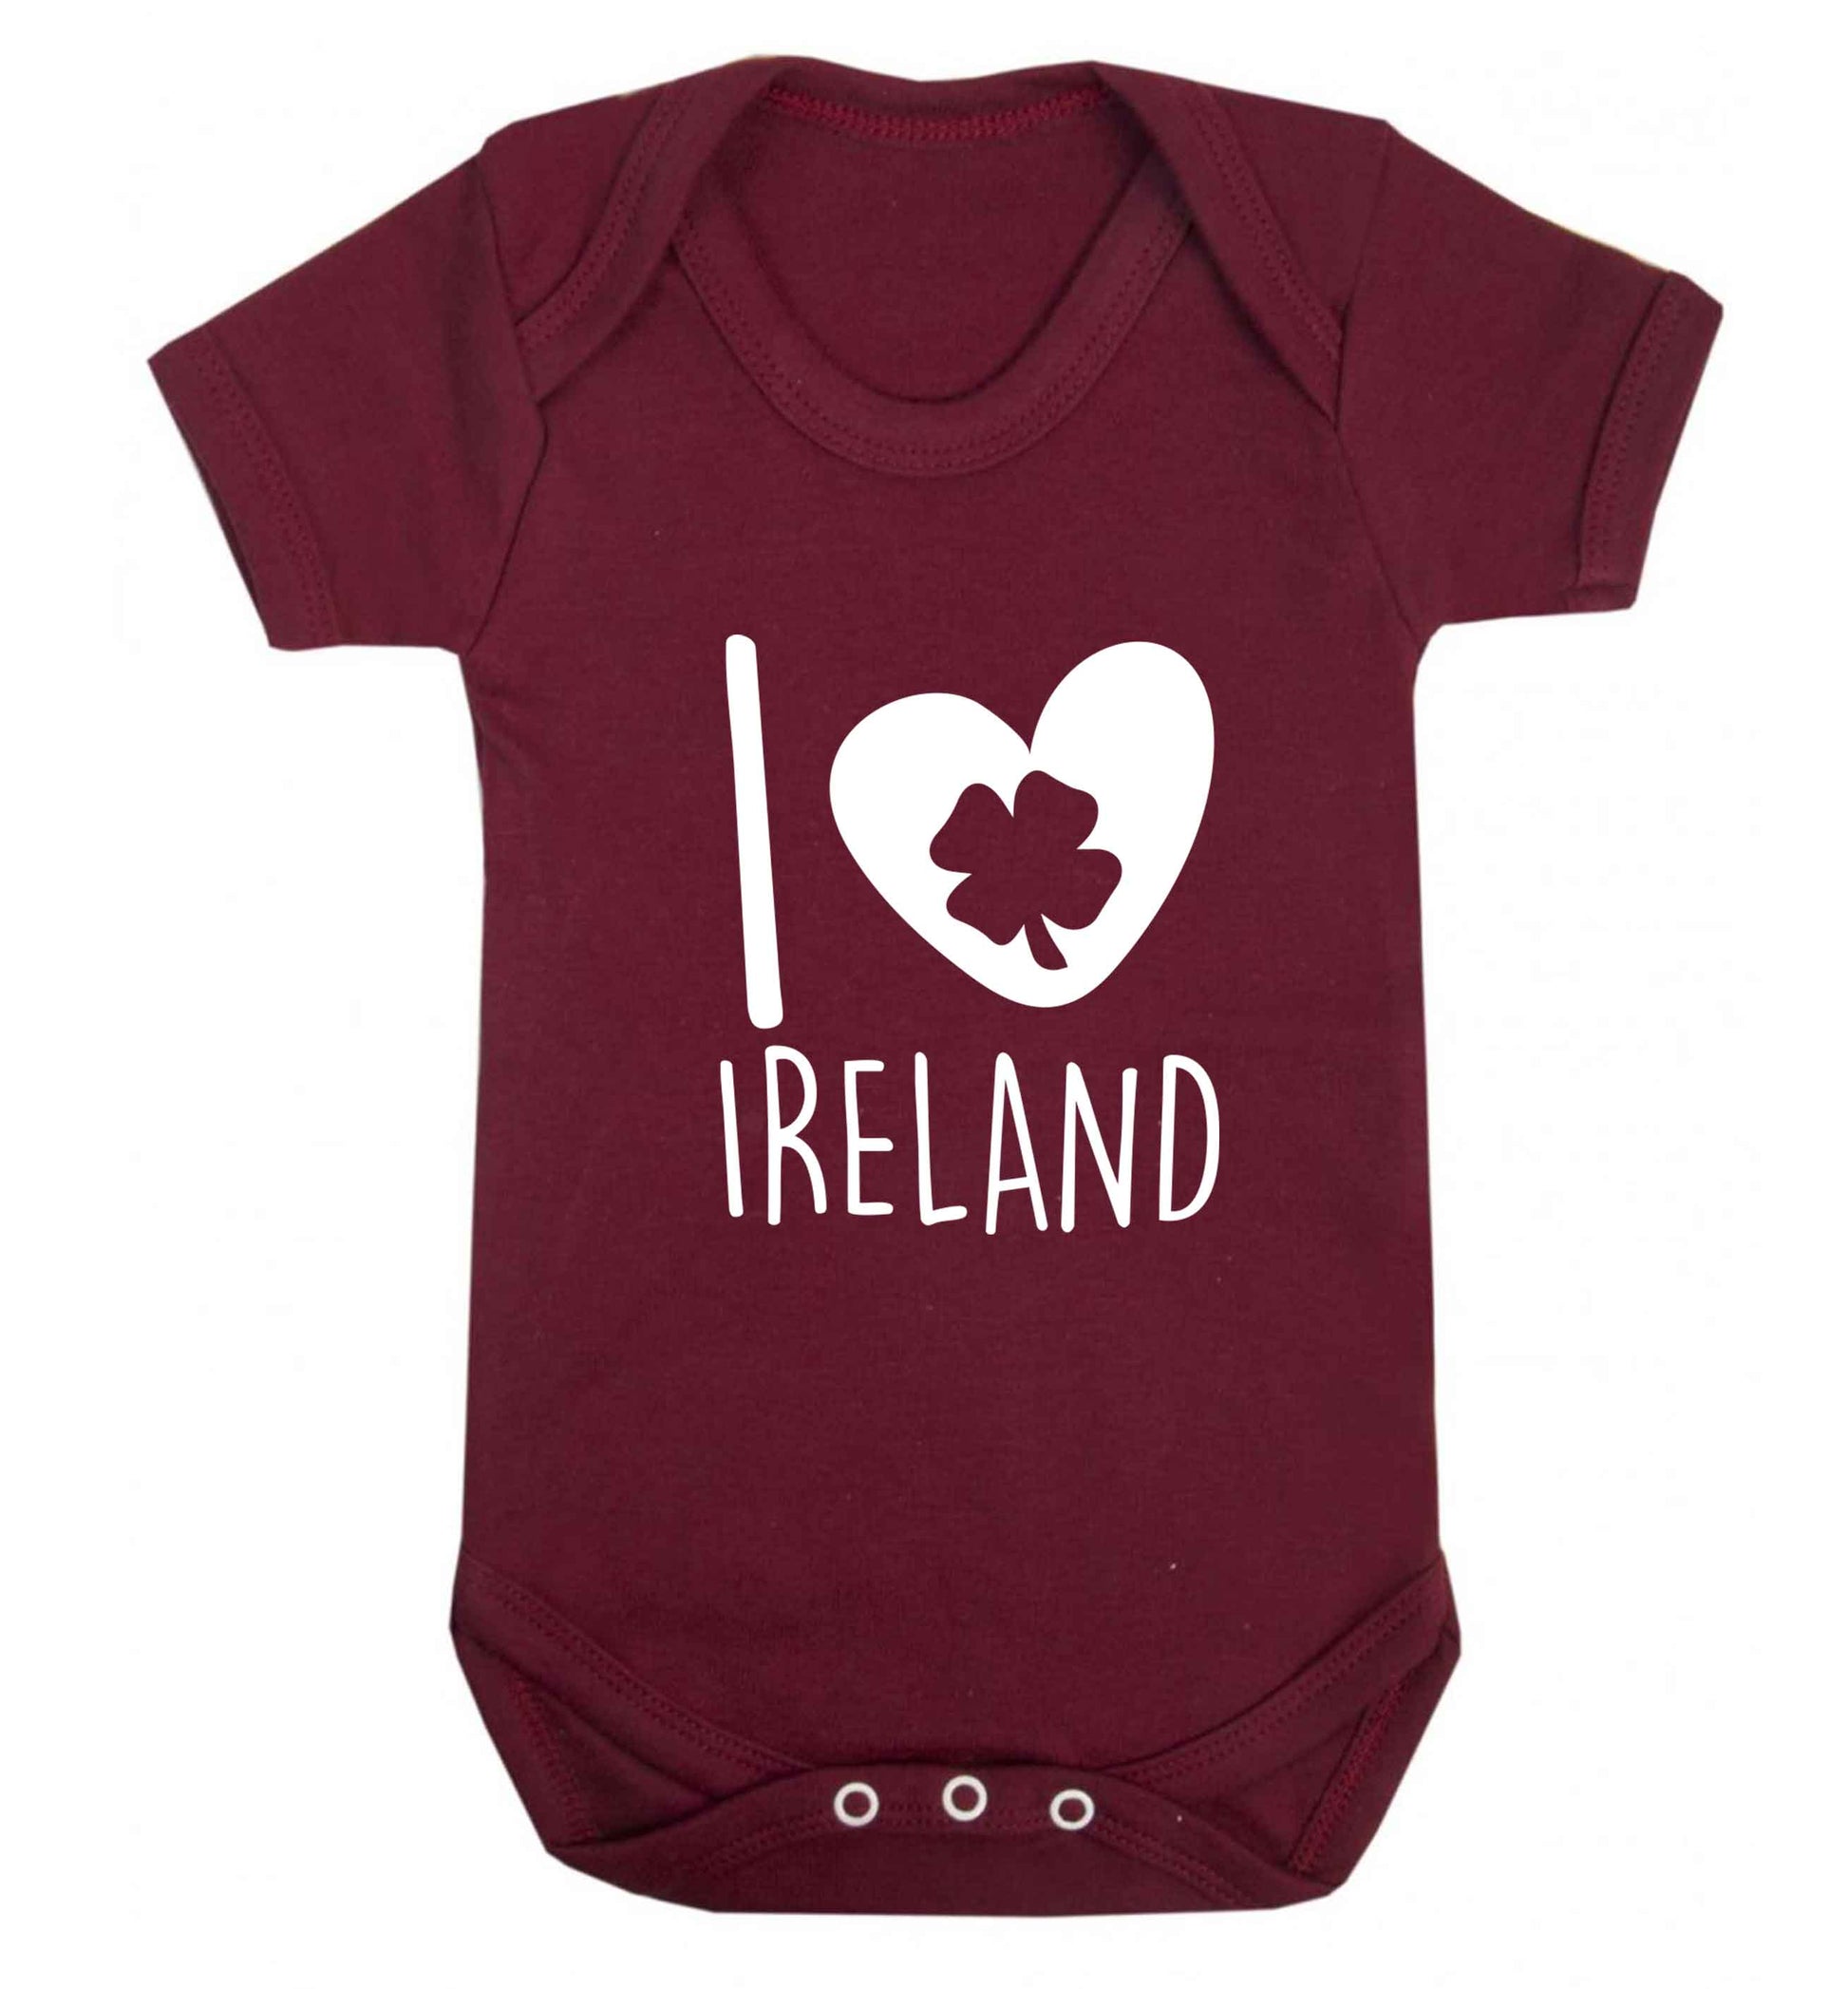 I love Ireland baby vest maroon 18-24 months